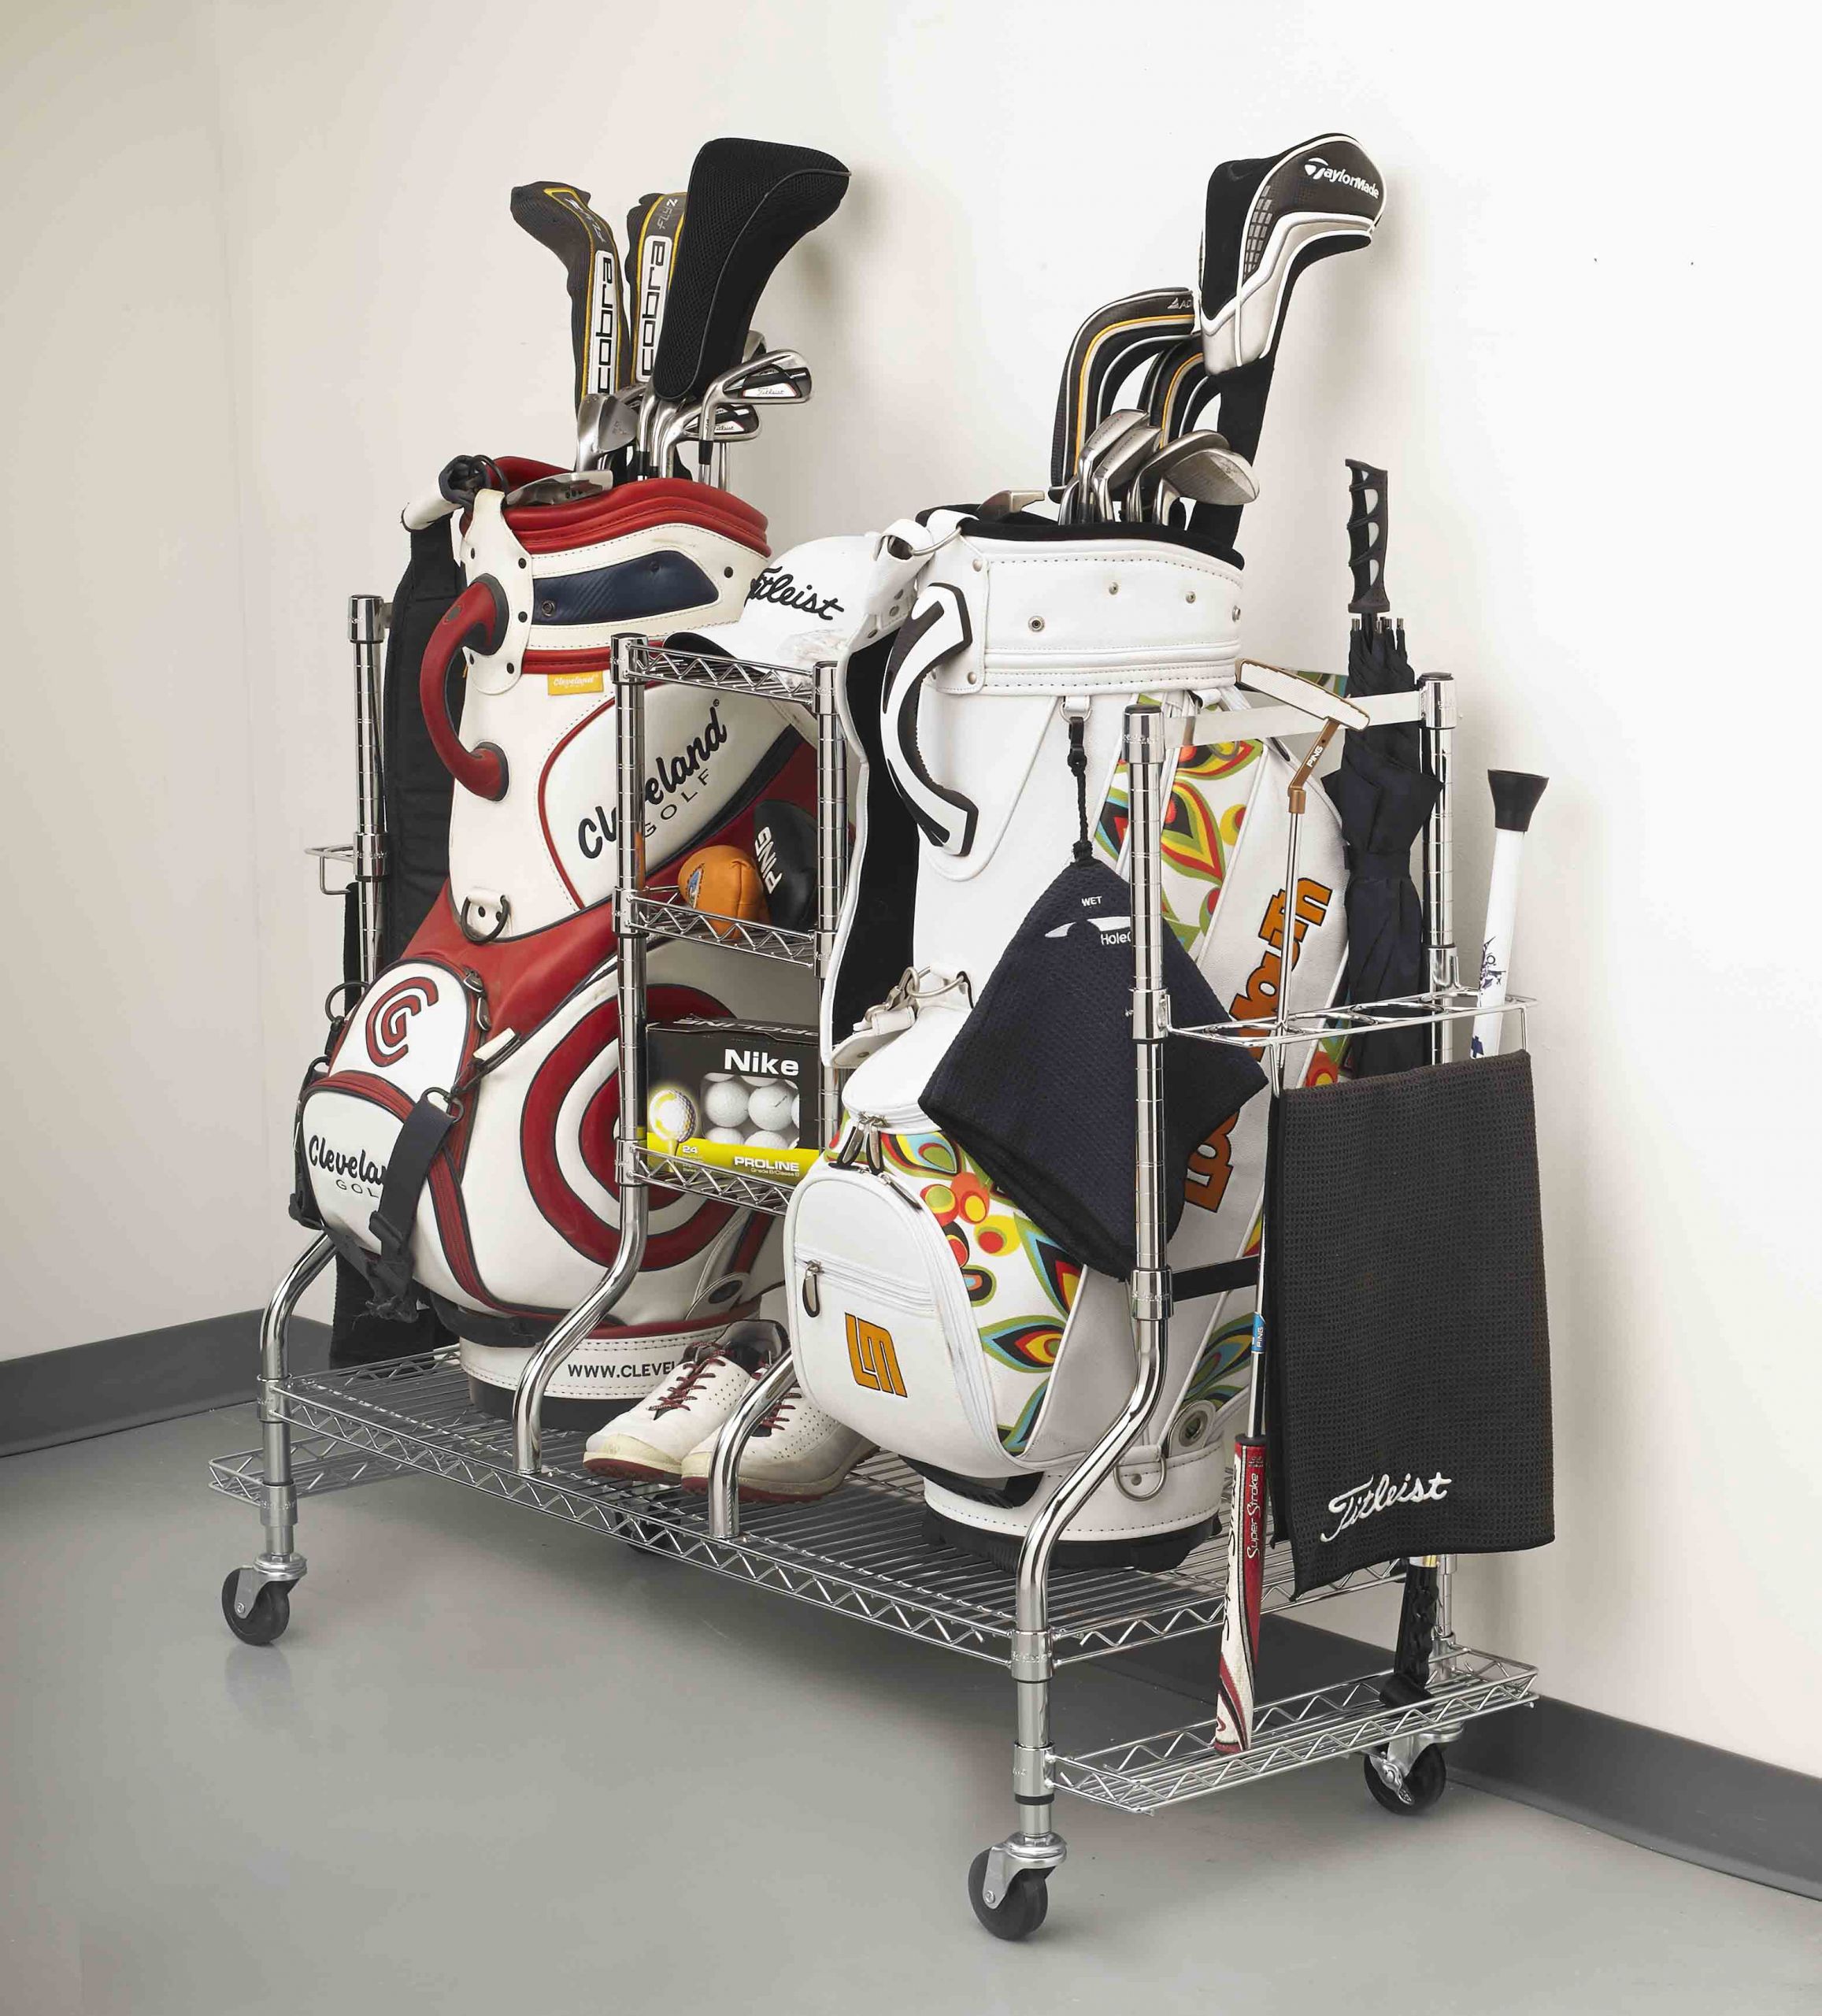 Golf Organizer For Garage
 Deluxe Golf Equipment Organizer